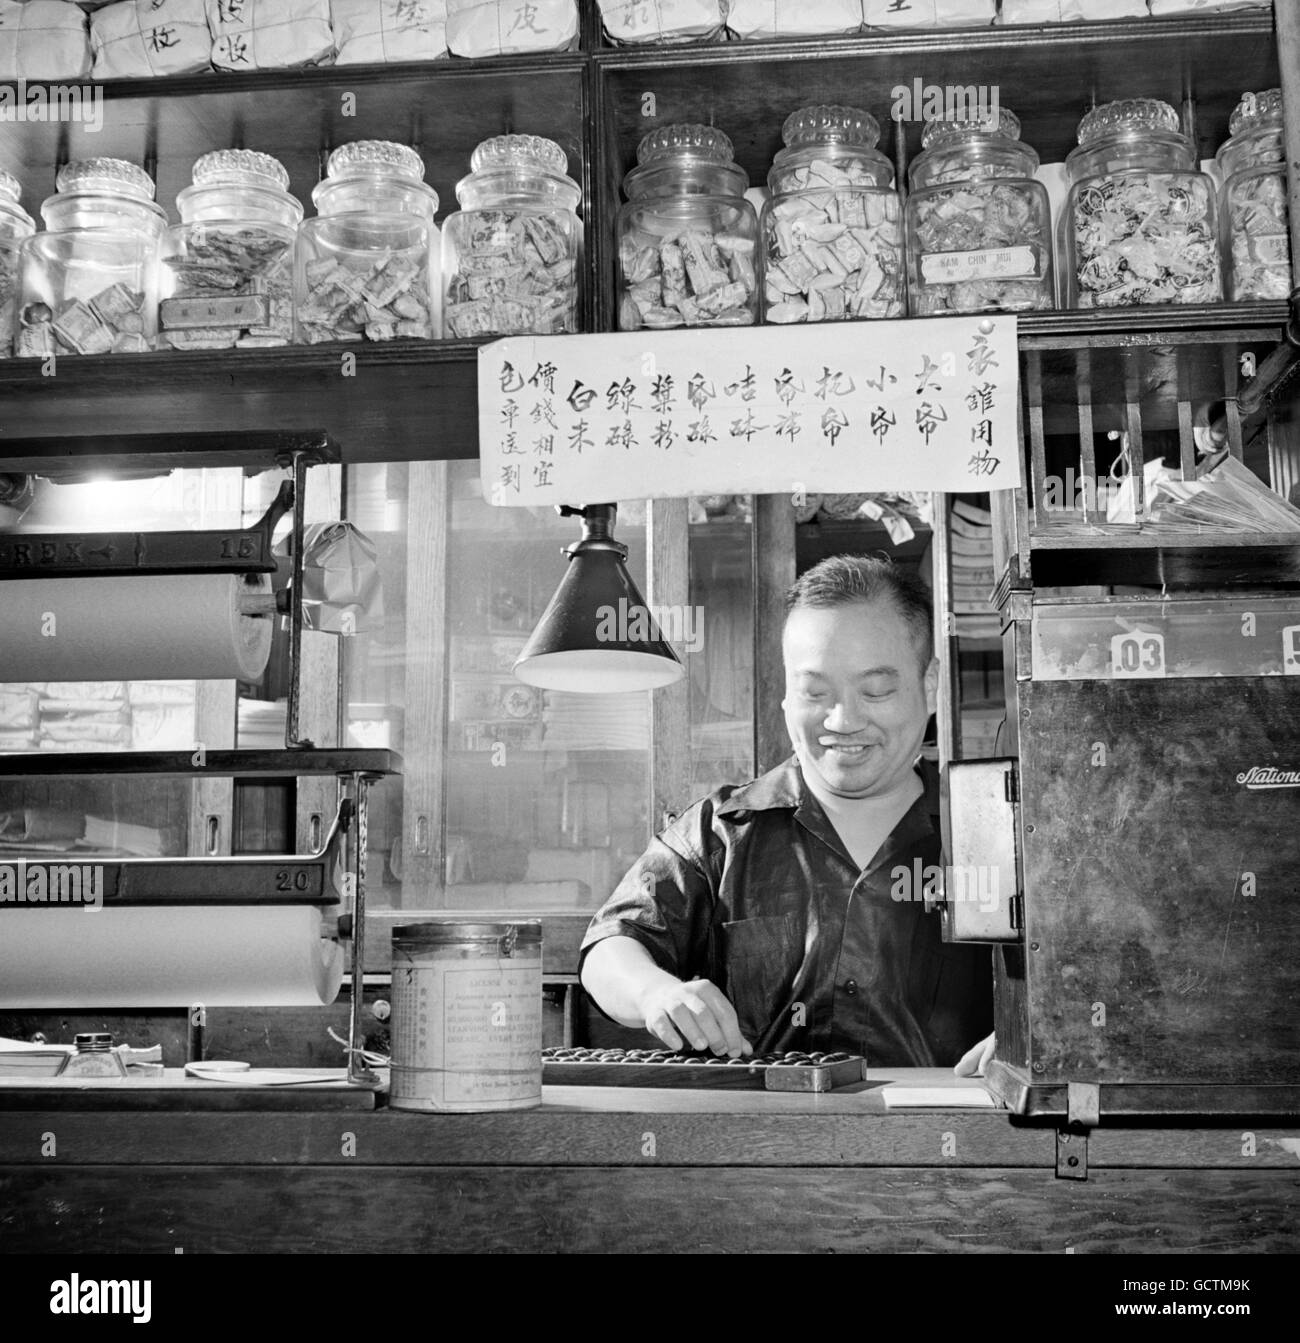 À l'aide d'un commerçant chinois abacus dans une épicerie à Chinatown, New York City, NY en 1942. Photo par Marjory Collins, Farm Security Administration. Banque D'Images